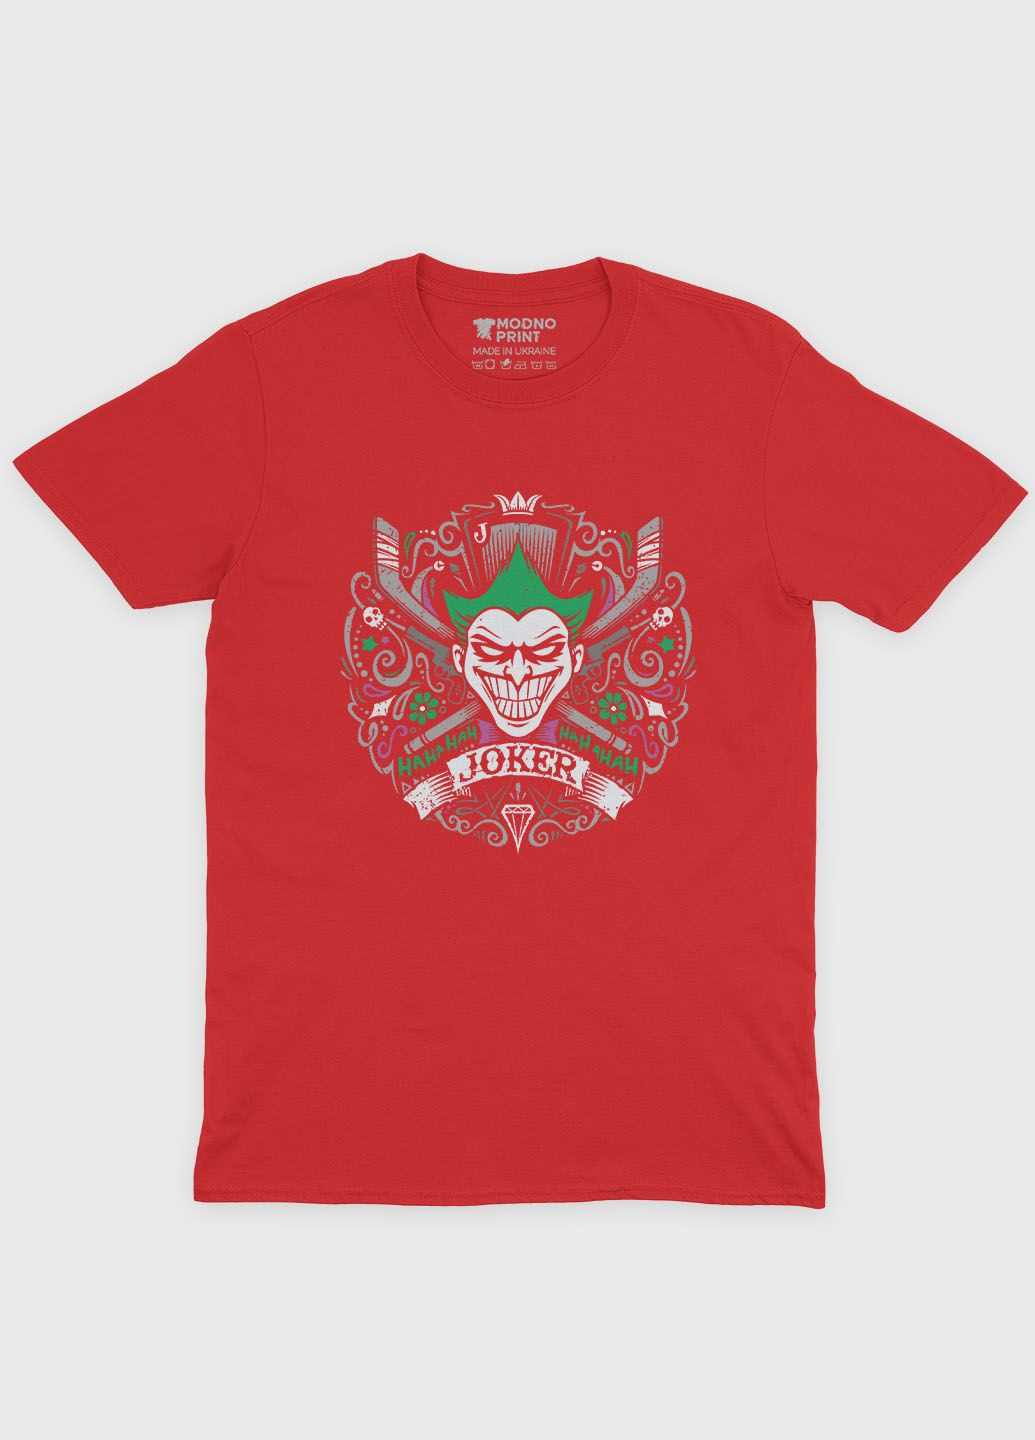 Червона демісезонна футболка для дівчинки з принтом суперзлодія - джокер (ts001-1-sre-006-005-025-g) Modno